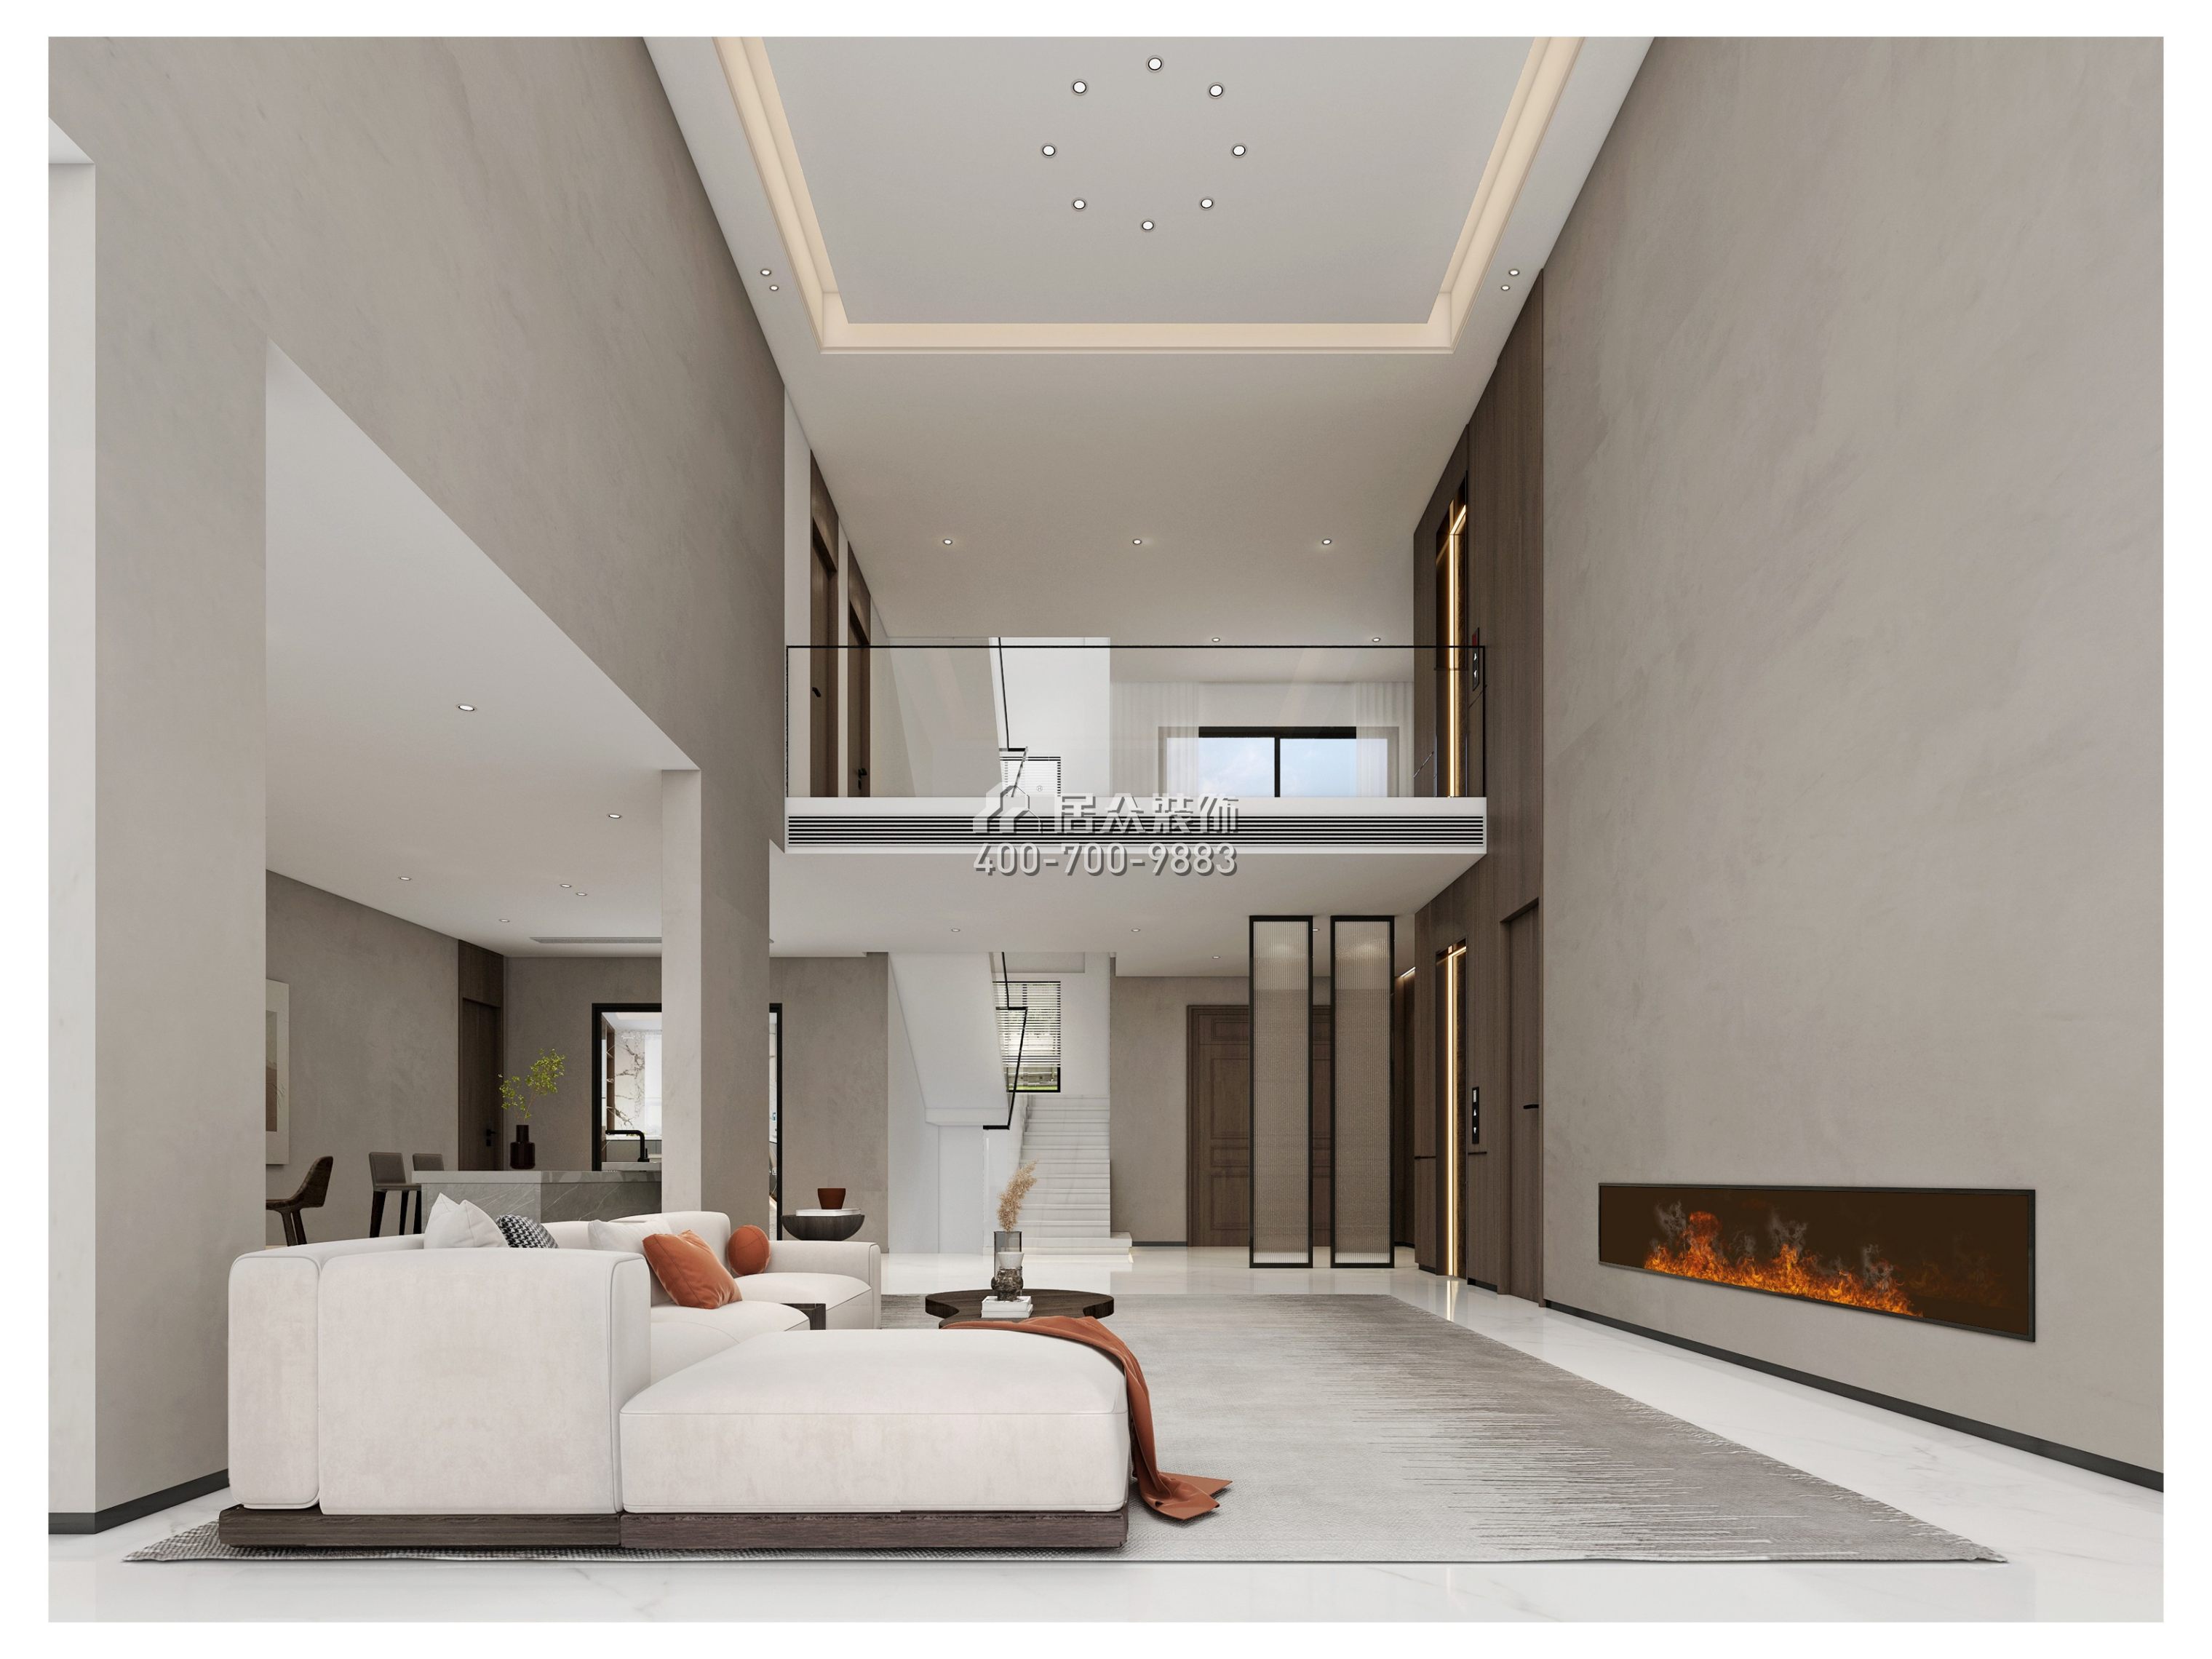 海逸豪庭御峰560平方米现代简约风格别墅户型客厅装修效果图